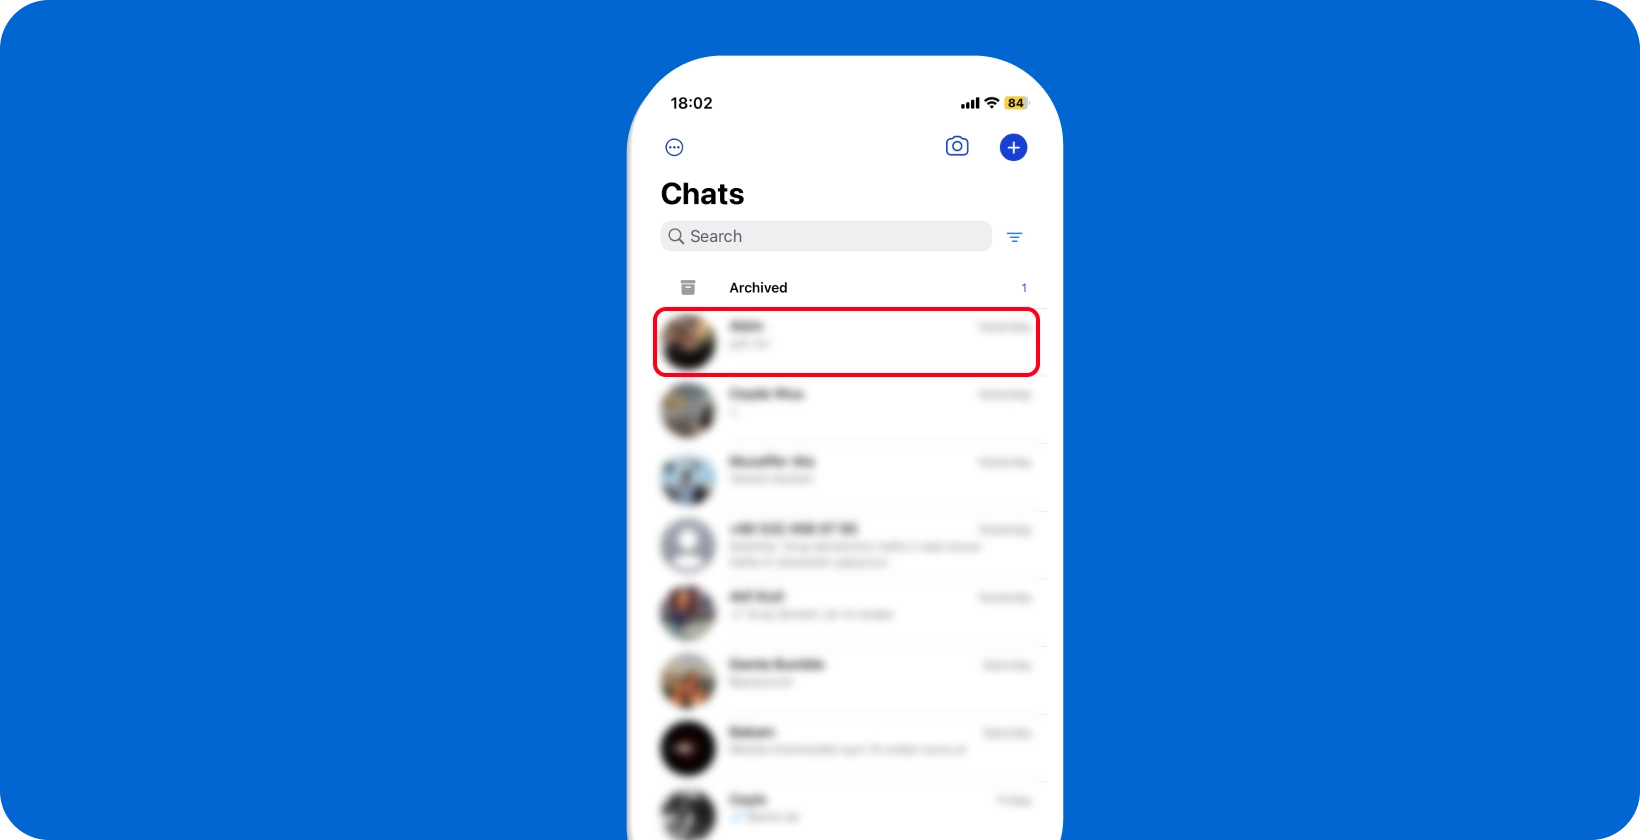 WhatsApp tela de bate-papo mostrando uma visão geral das conversas, pronta para interação e ditado do usuário.